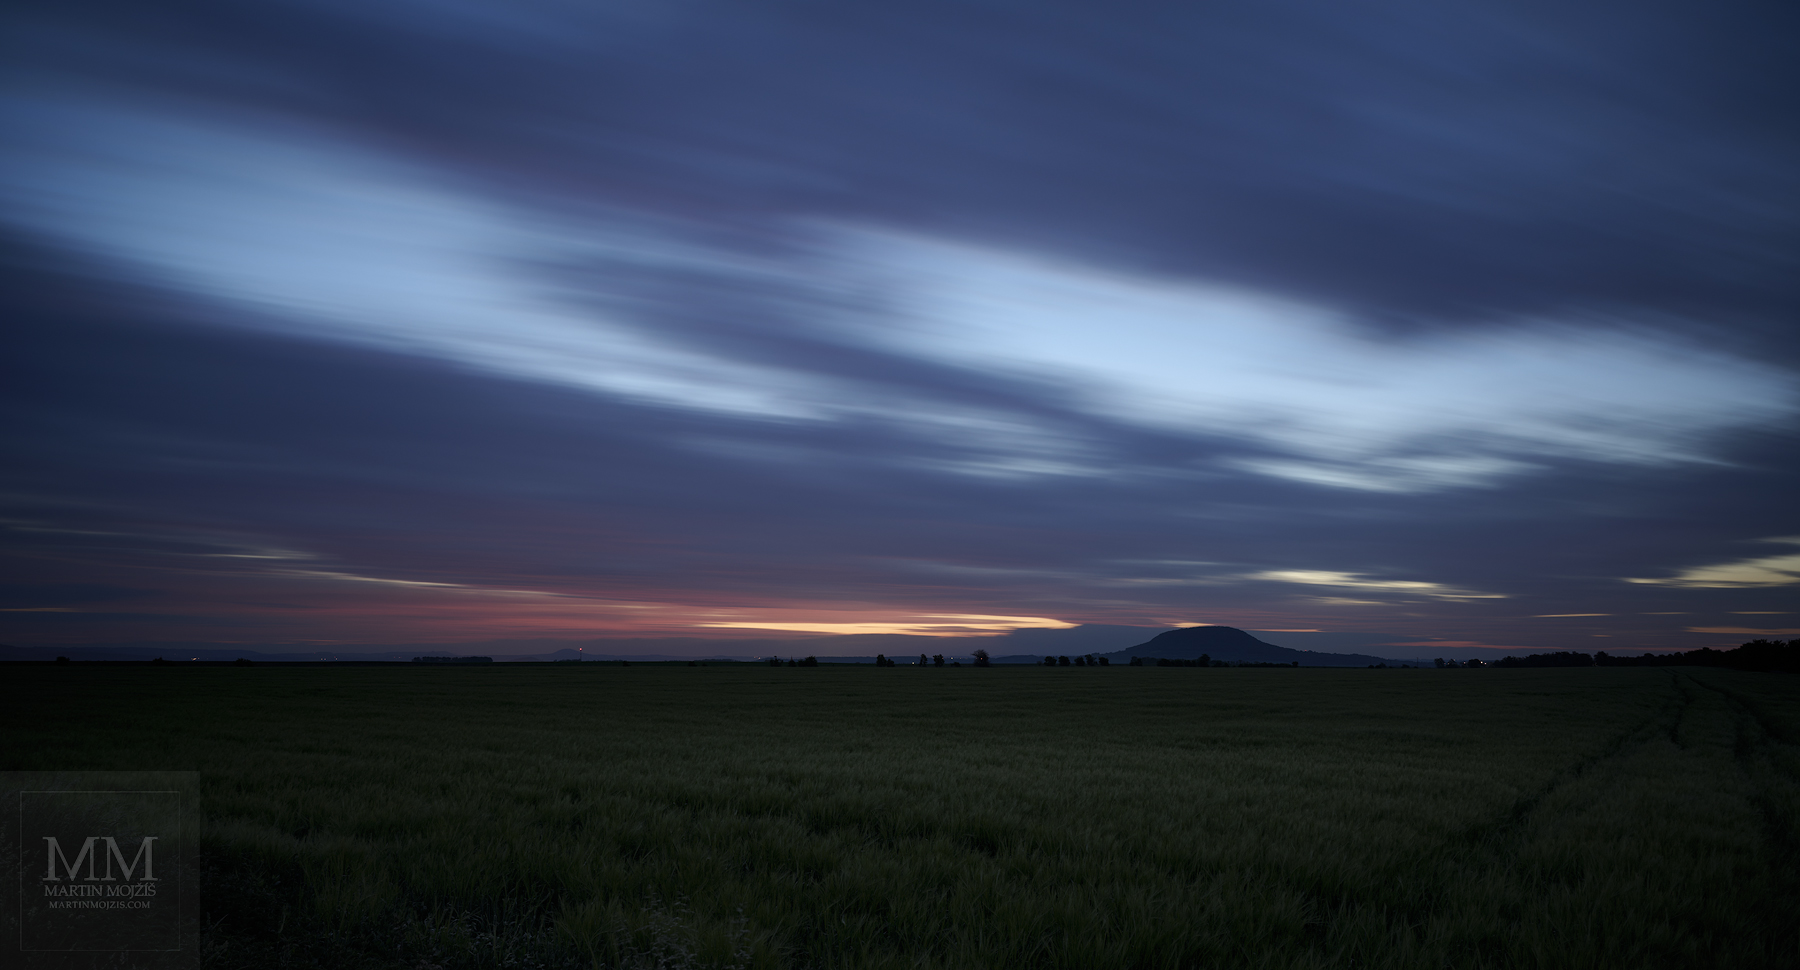 Ranní barevné letící mraky nad krajinou ve svítání. Velkoformátová umělecká fotografie krajiny s názvem ČTVRTÁ HODINA RANNÍ. Fotograf Martin Mojžíš.